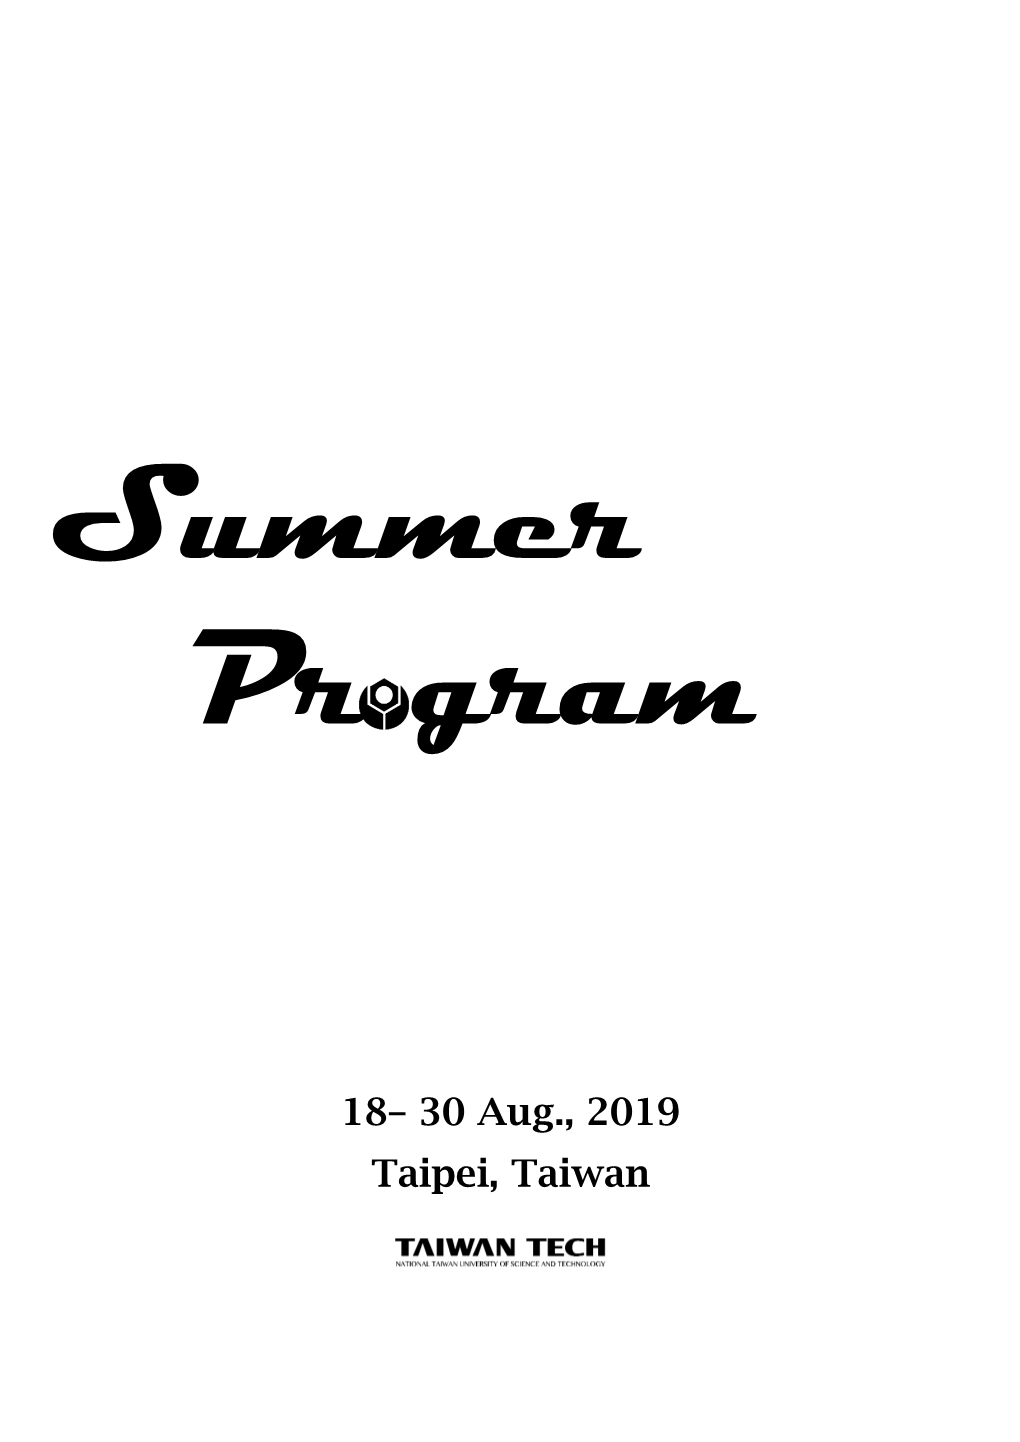 Taiwan Tech Summer Program 2019